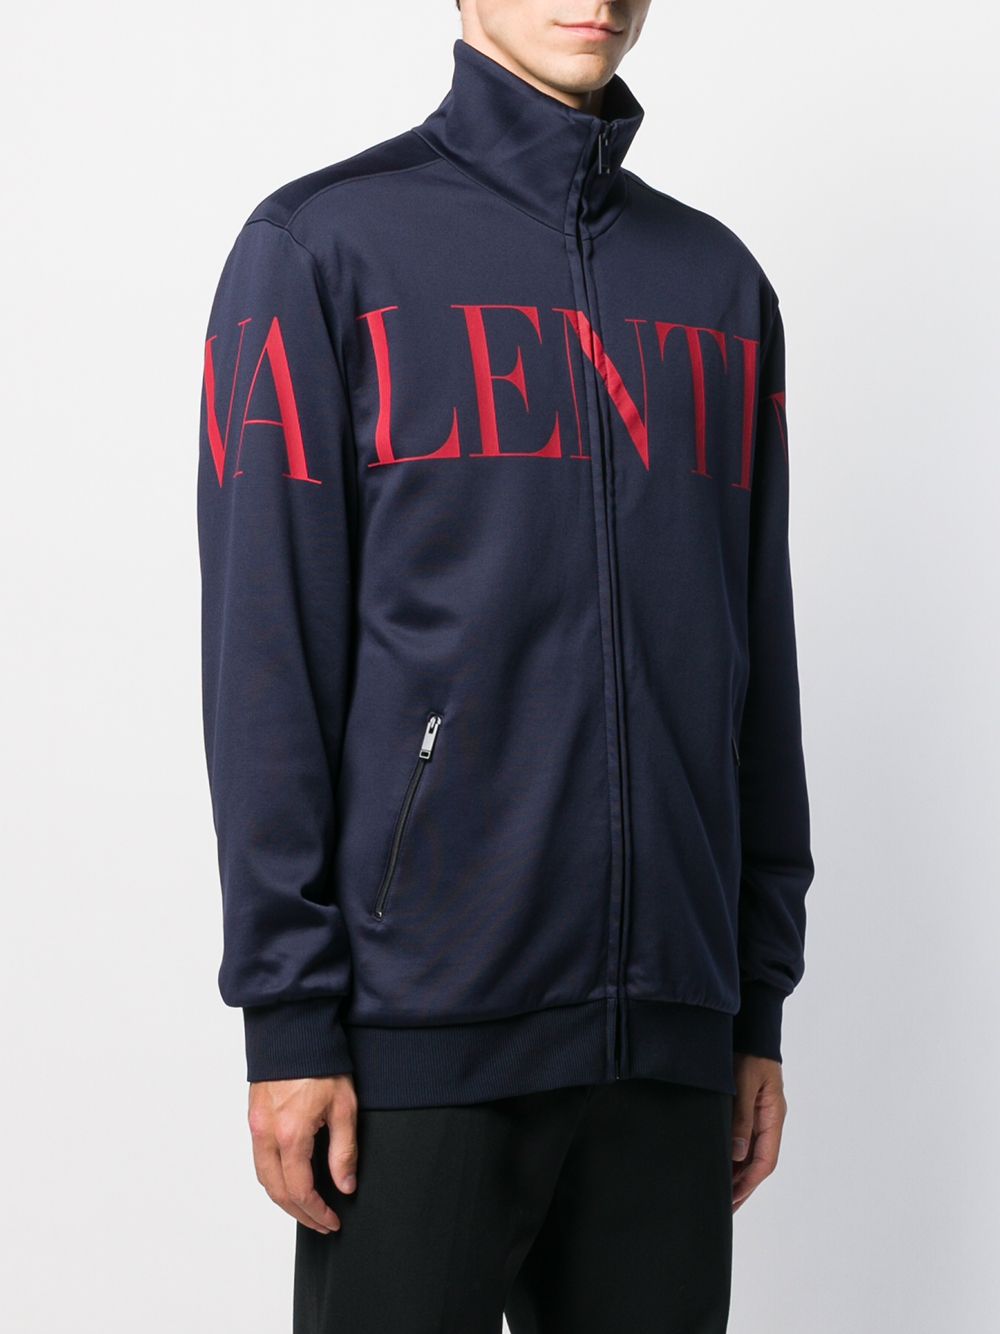 фото Valentino спортивная куртка с логотипом